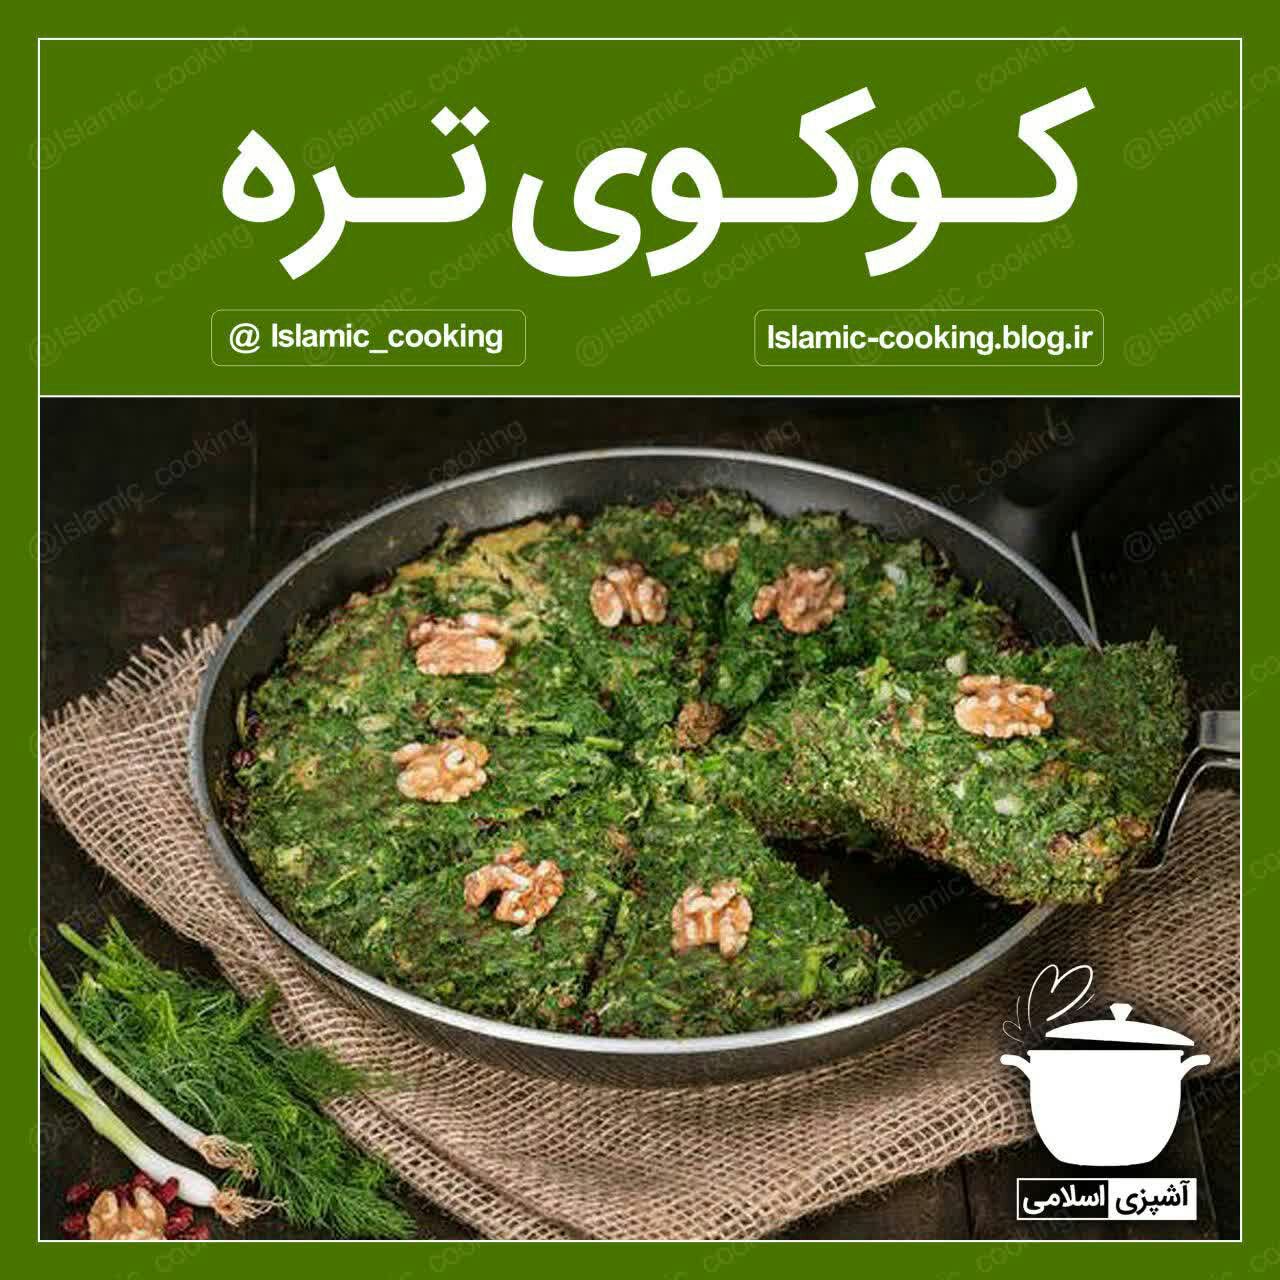 کوکو،کوکوی تره،کوکو سبزی،طرز تهیه کوکوی تره،آشپزی،آشپزی اسلامی،طب اسلامی